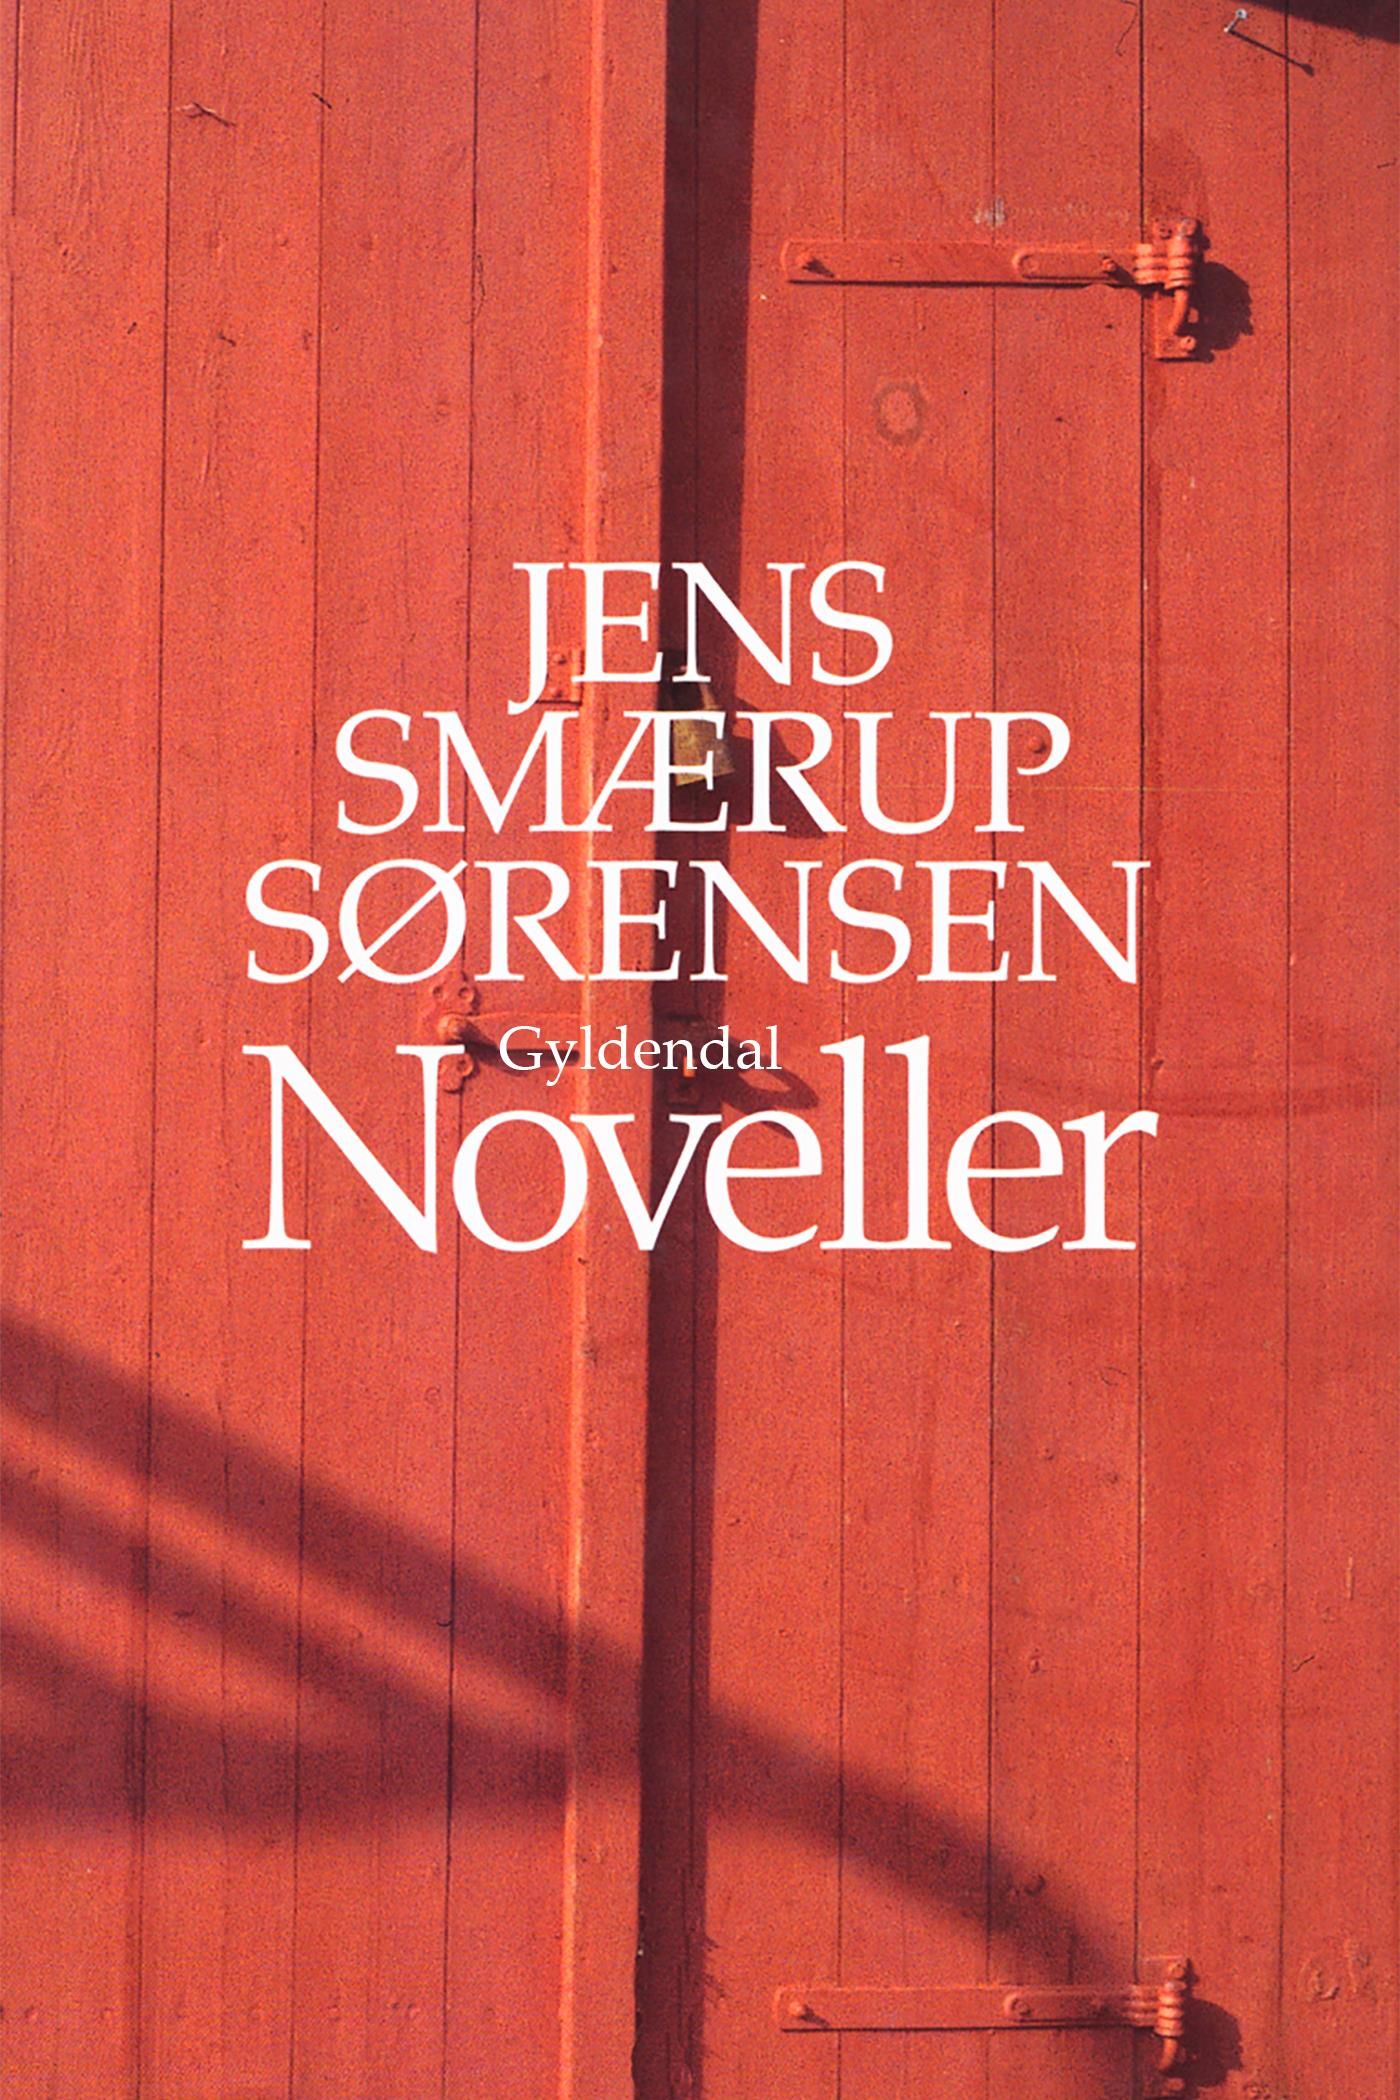 Noveller, eBook by Jens Smærup Sørensen